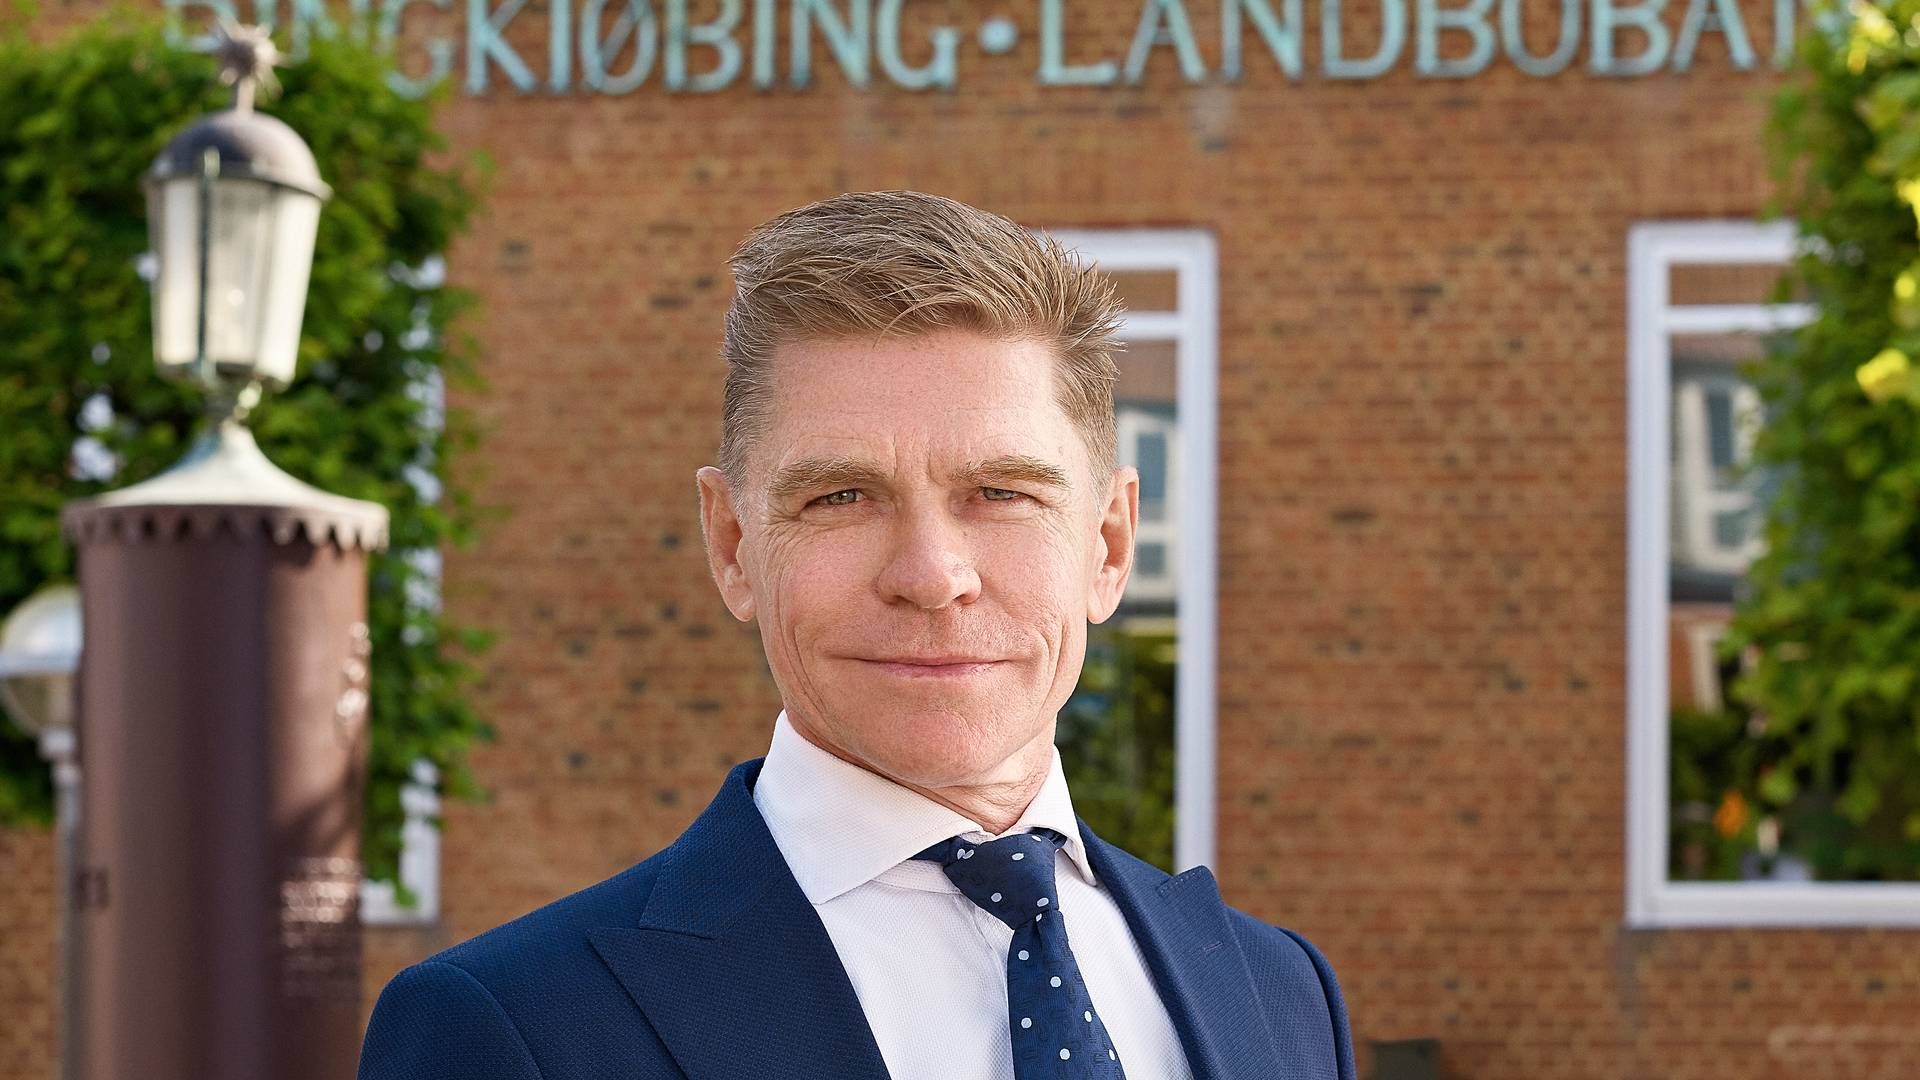 John Fisker, adm. direktør i Ringkjøbing Landbobank, har ikke ønsket at uddybe pantebrevseksponeringen. | Foto: Pr / Ringkjøbing Landbobank